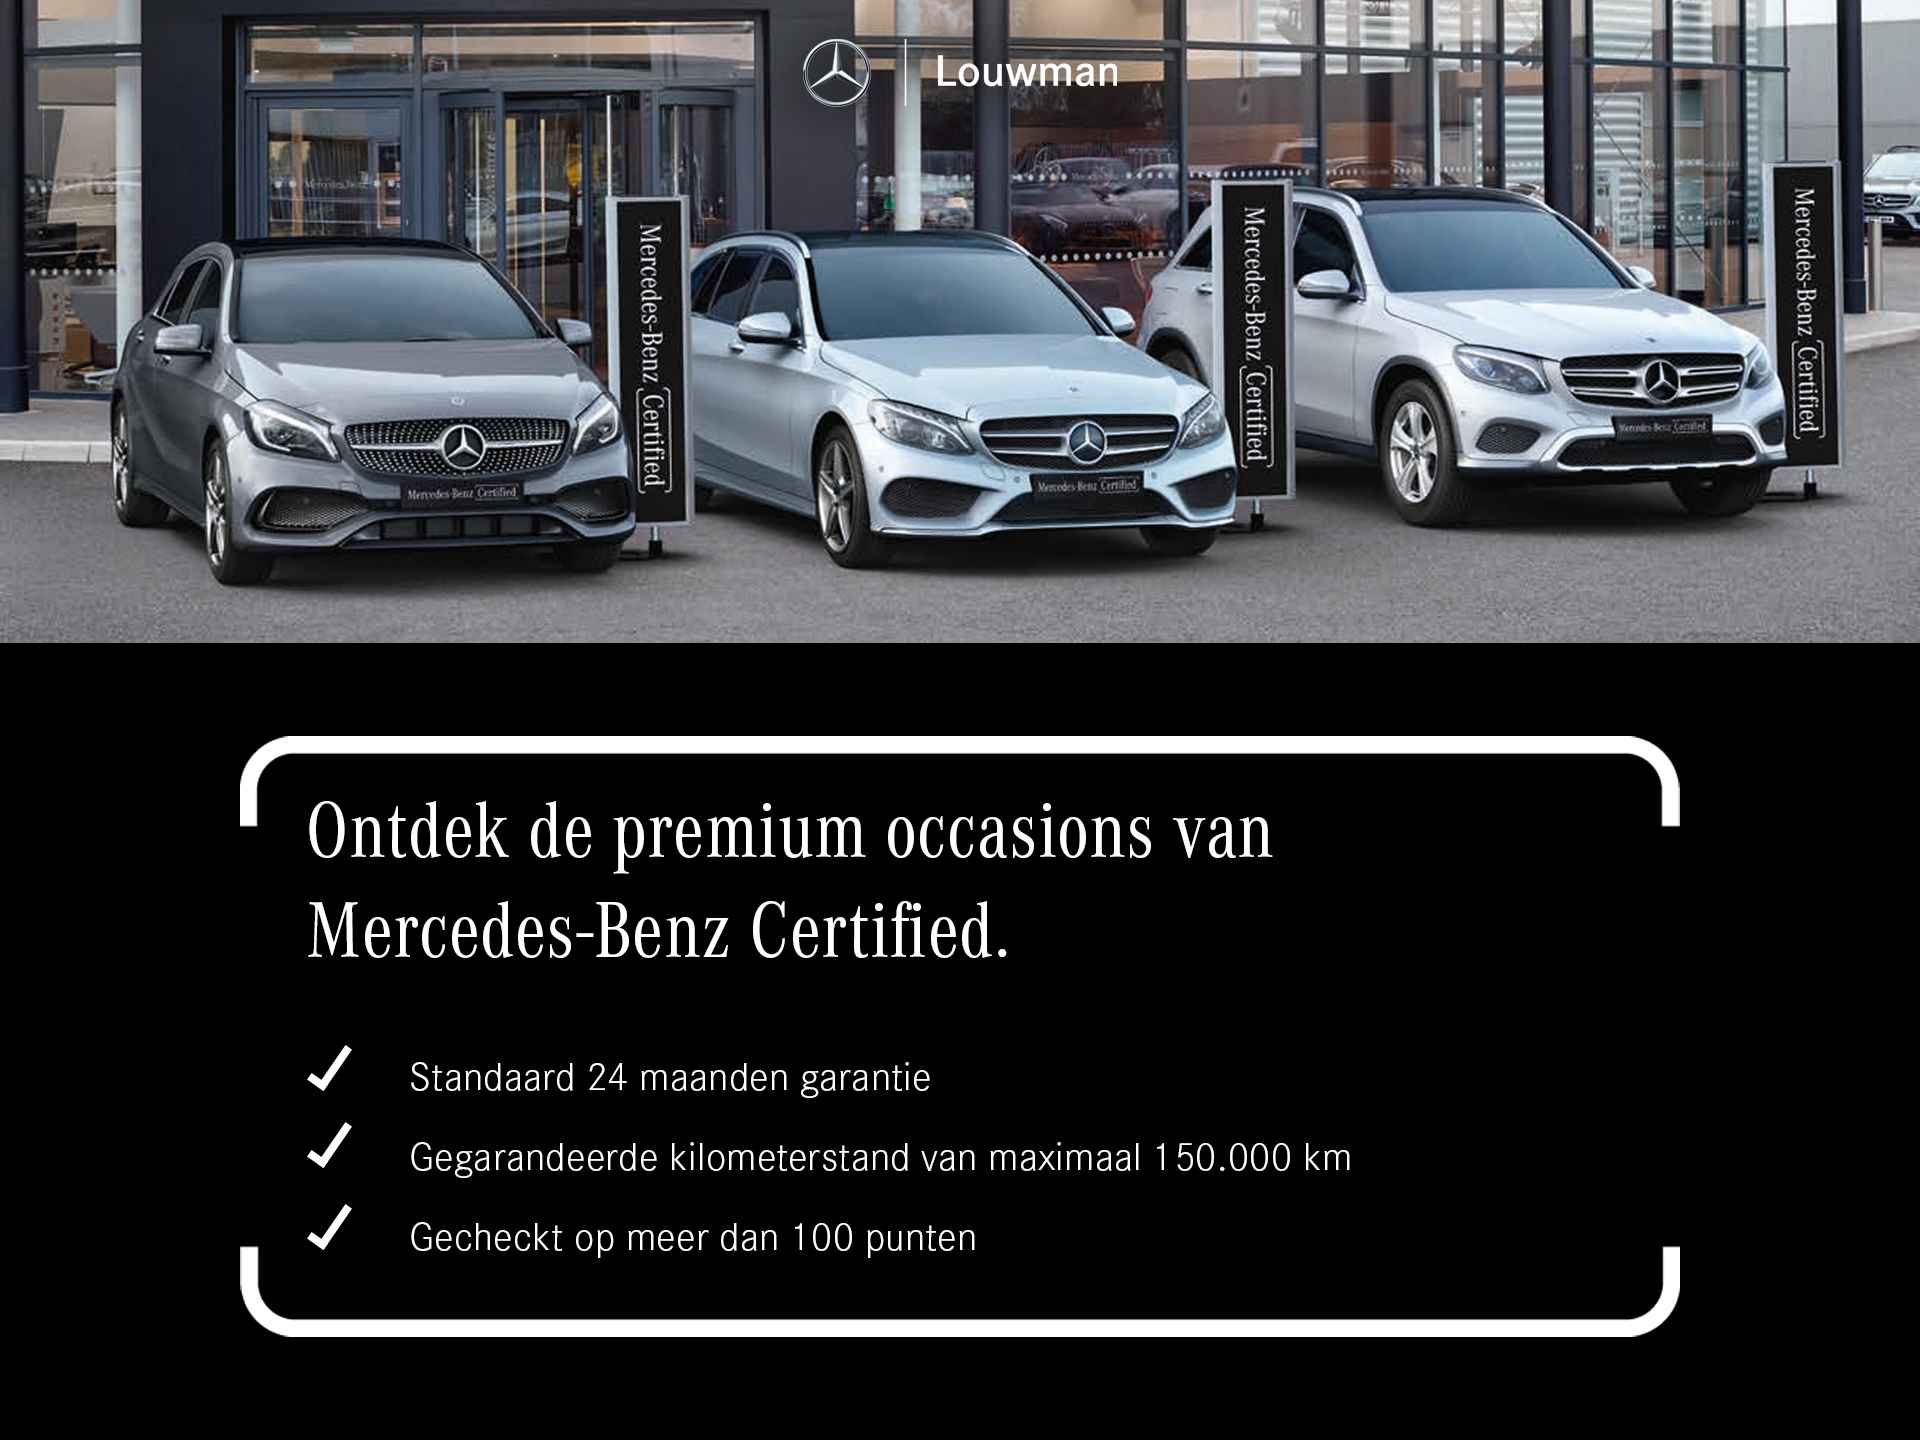 Mercedes-Benz S-Klasse 450 e Lang AMG Line Multi spaaks lichtmetalen velgen| Premium plus pakket | Night Pakket | Achteras meesturend 4,5 graad | Alarm klasse 5 | inclusief 24 maanden MB Certified garantie voor europa - 36/37